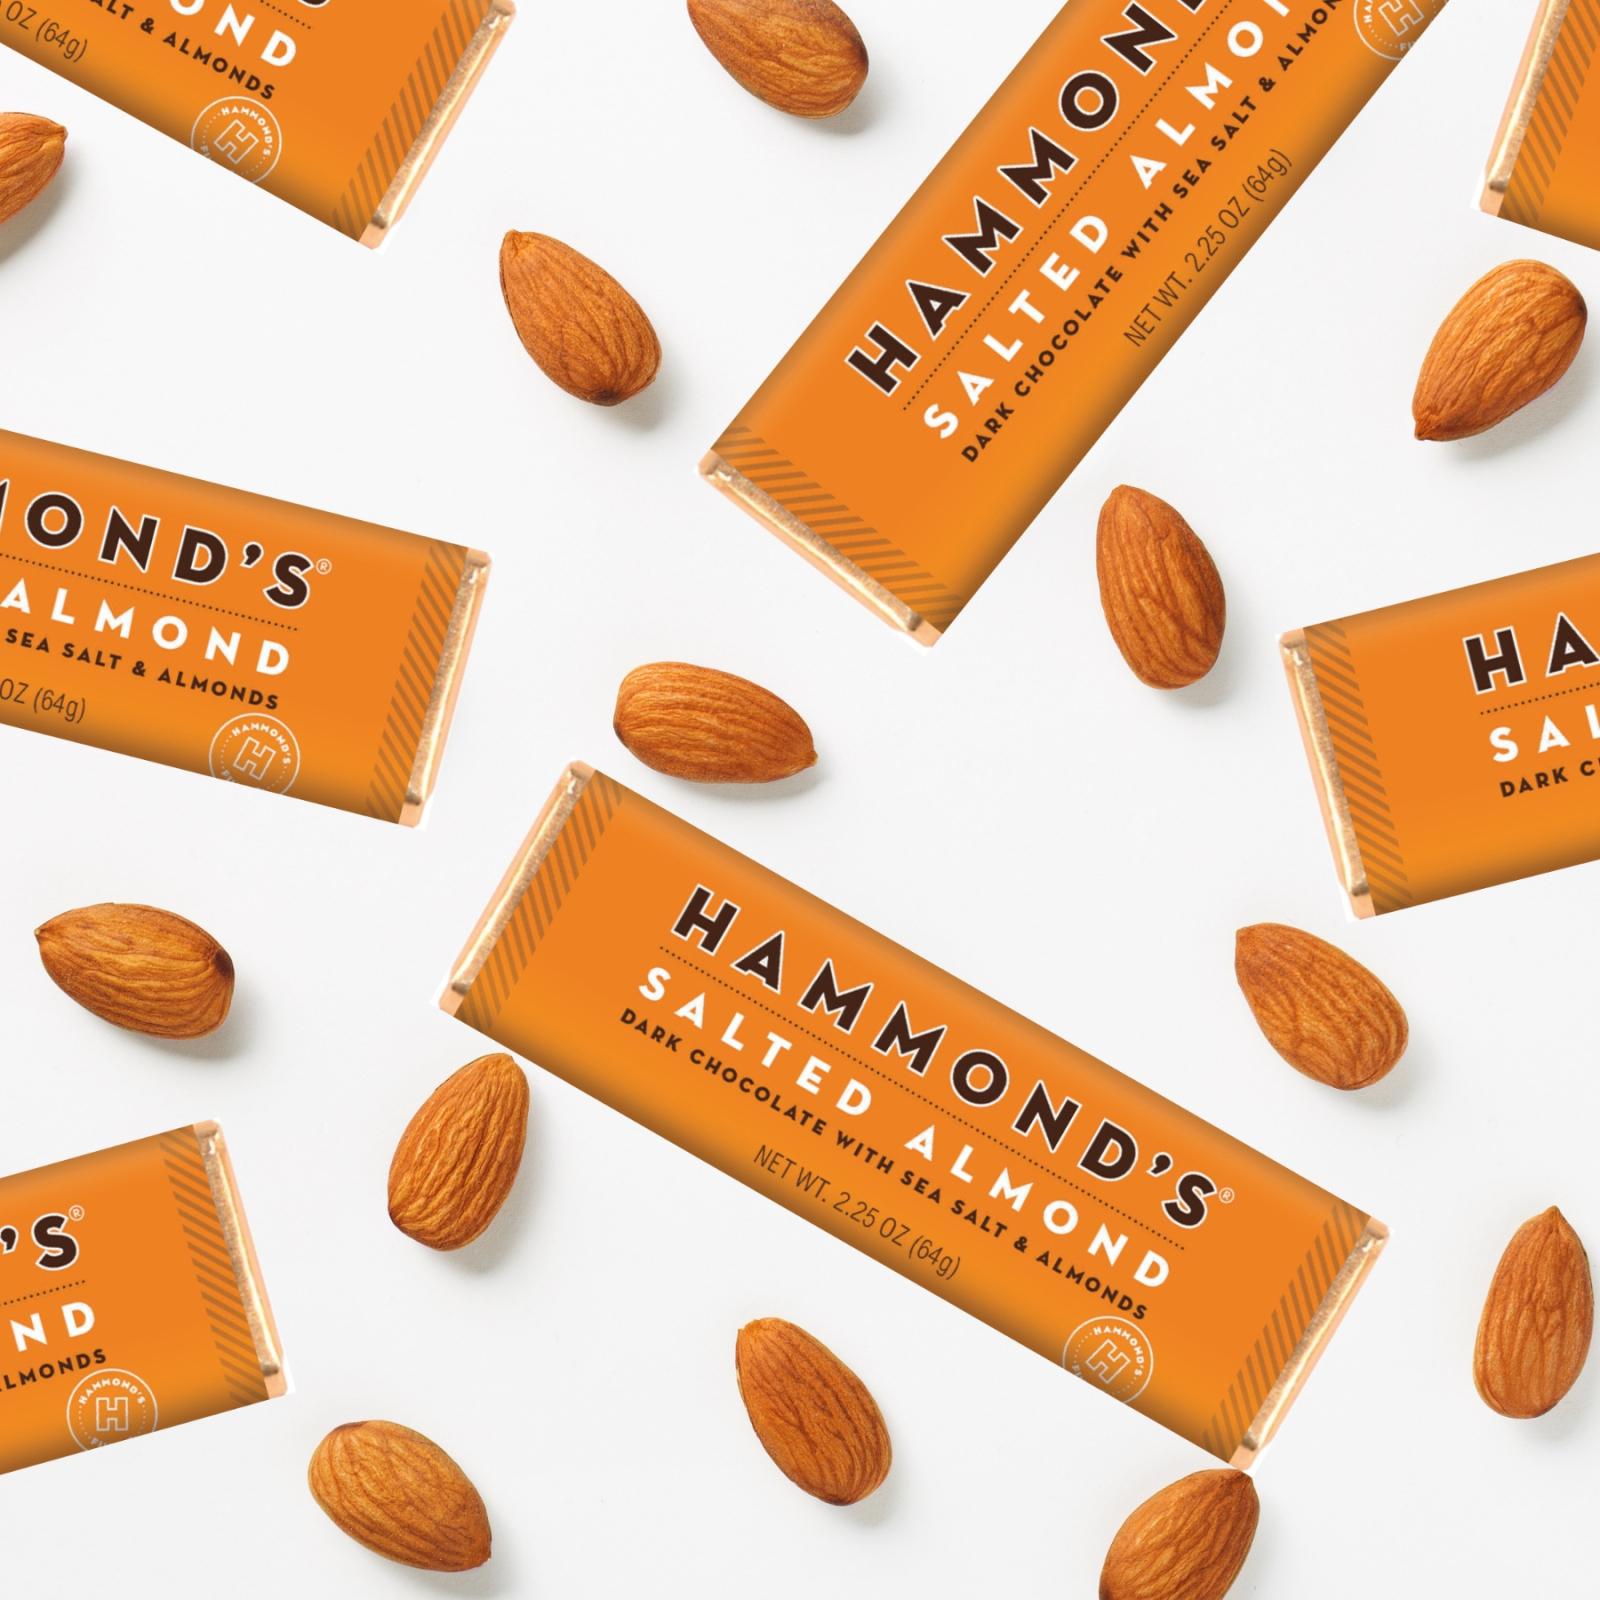 Hammond's Candies Salted Almond Dark Chocolate Bars